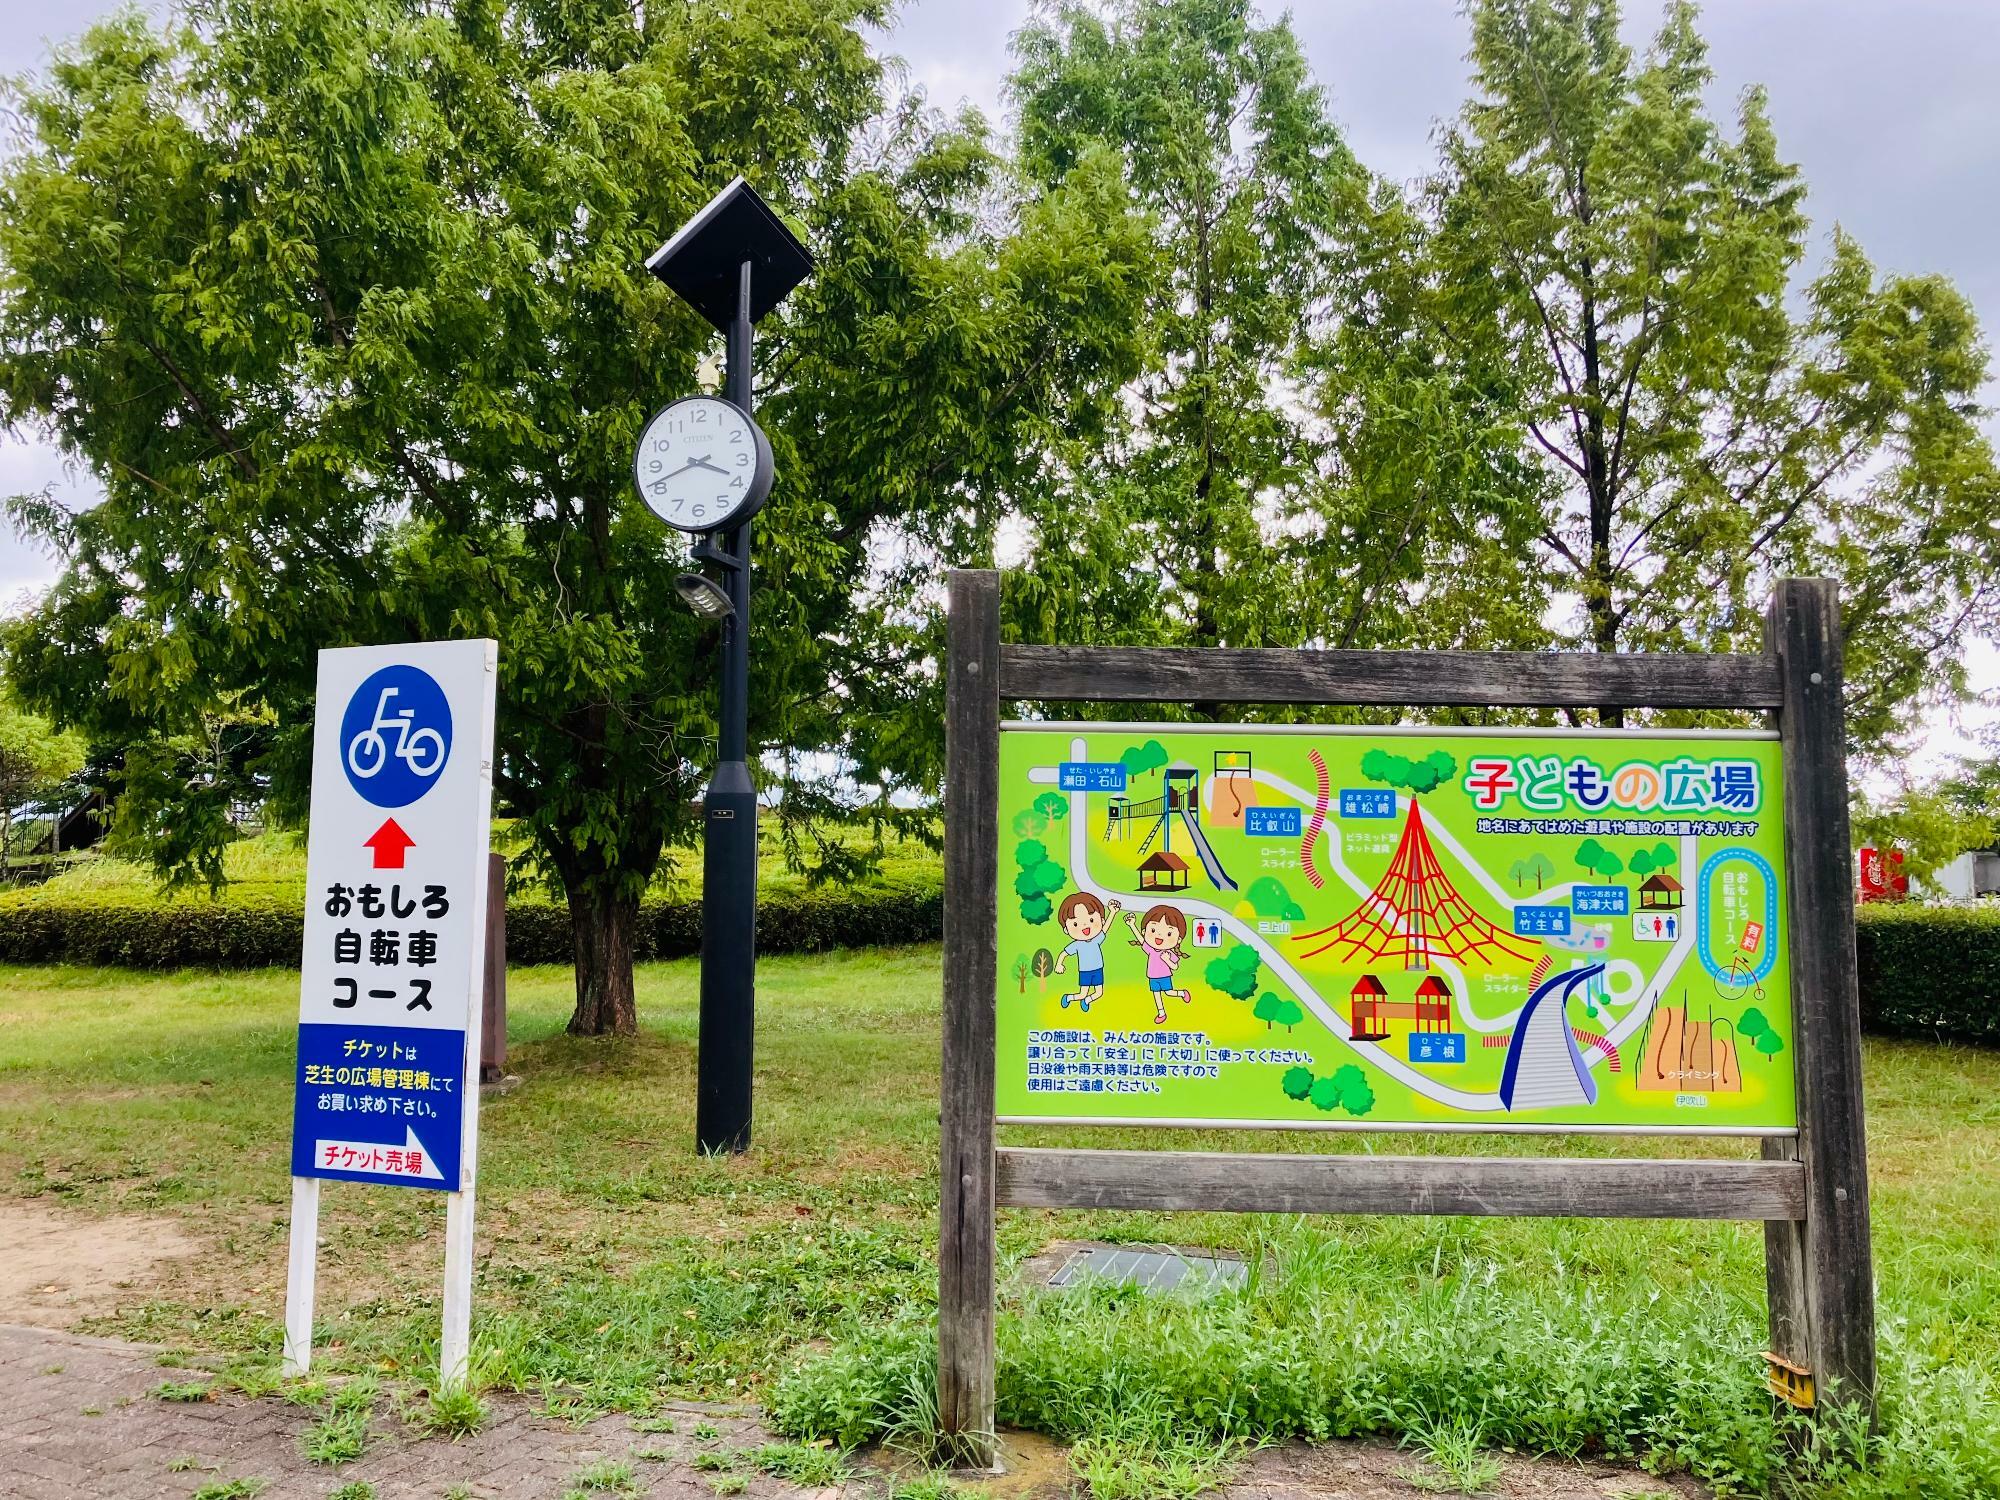 ※画像は、「矢橋帰帆島公園」内の様子。